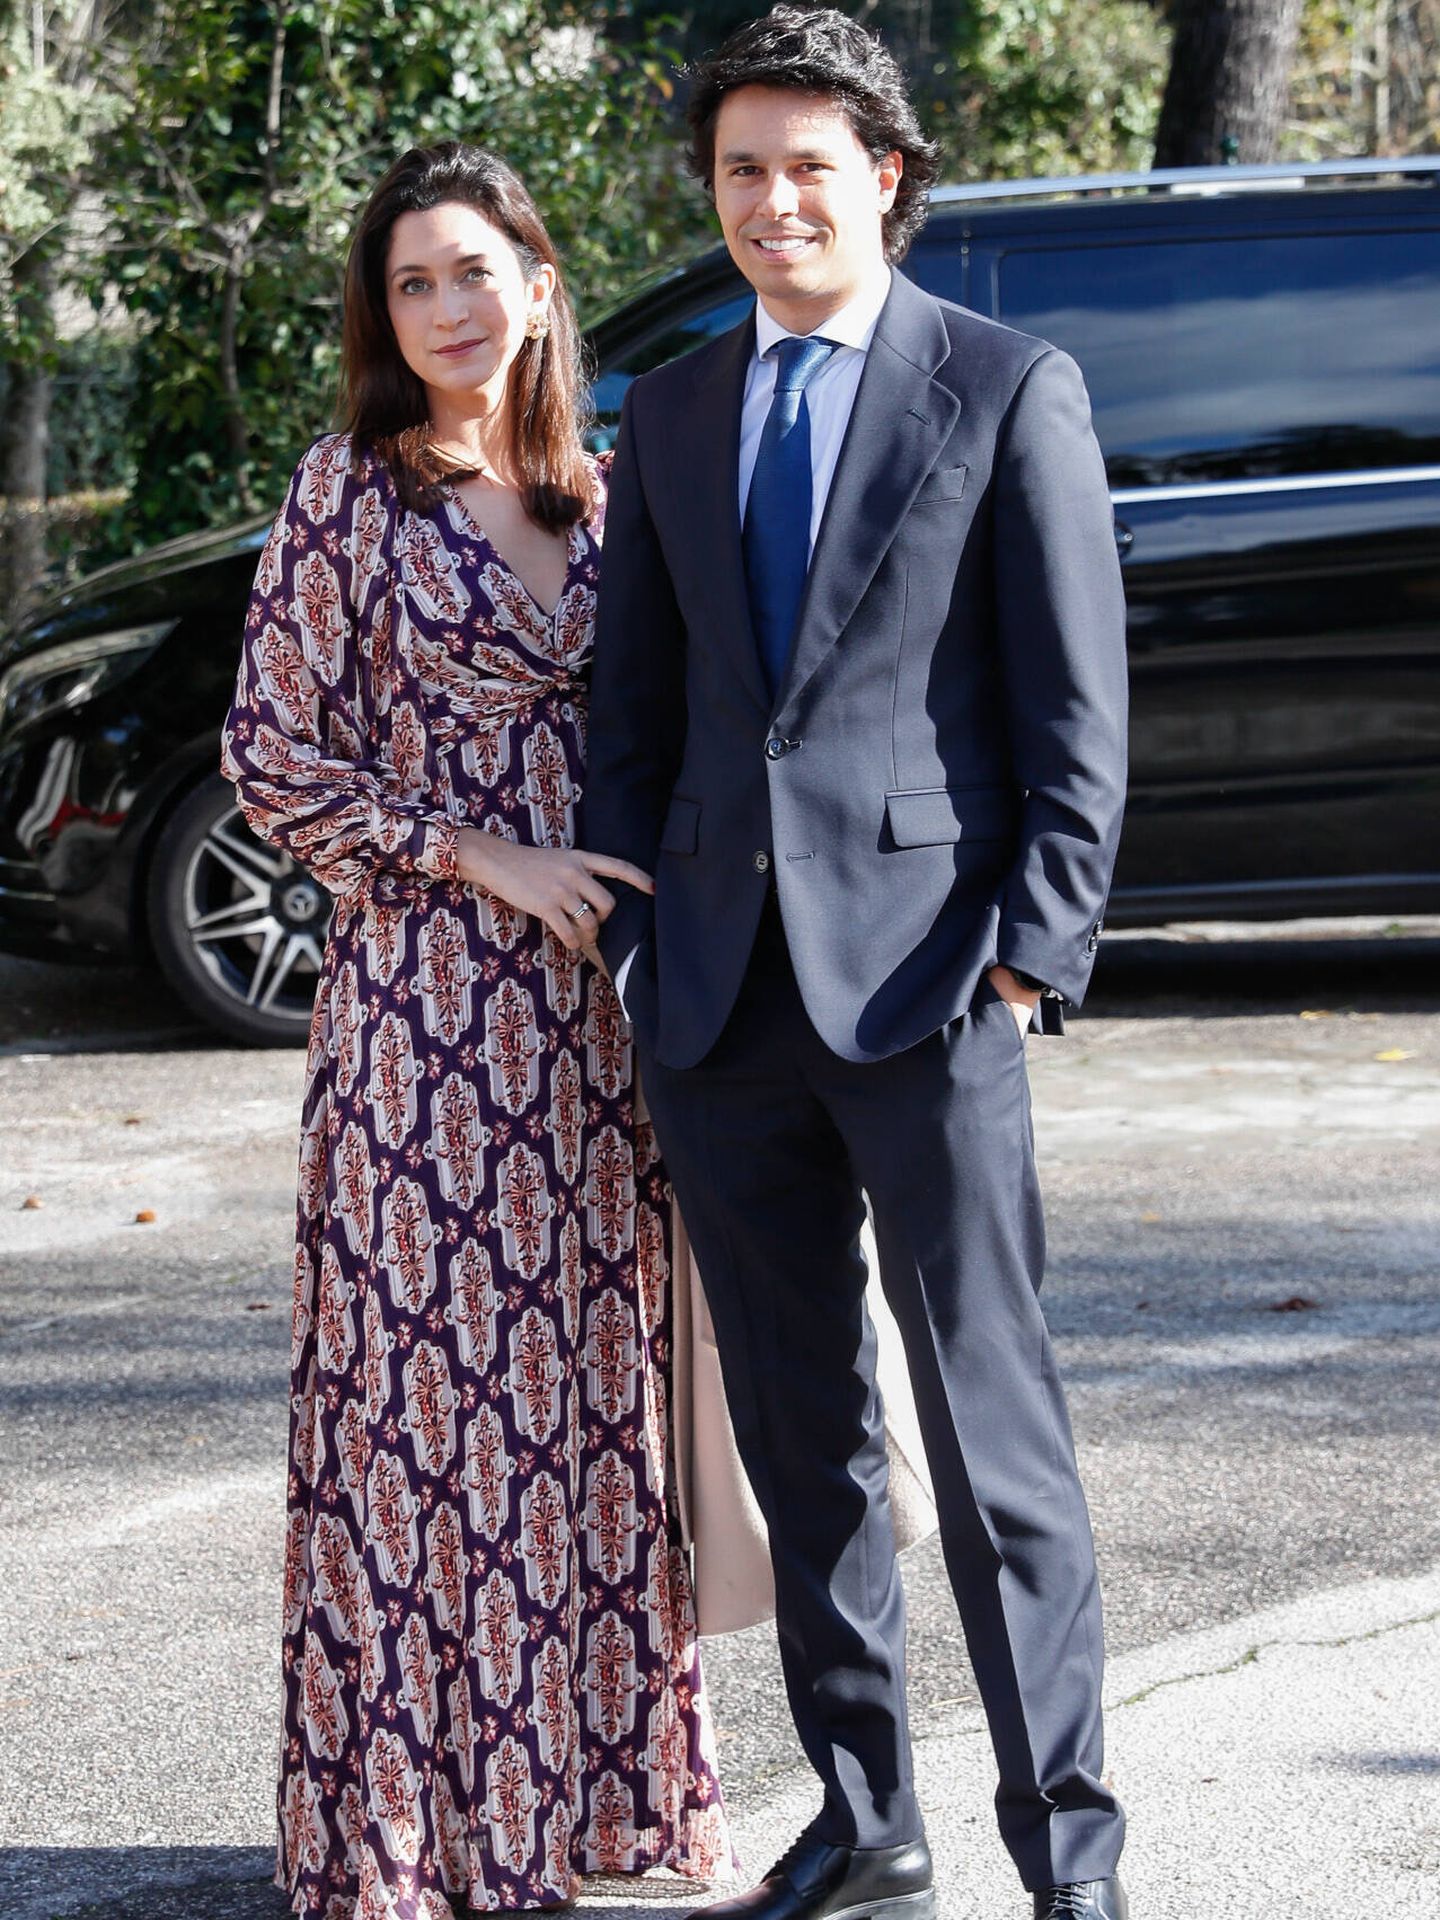 Álvaro Castillejo y Cristina Fernández, a su llegada a la boda de Cristina Reyes. (Gtres)